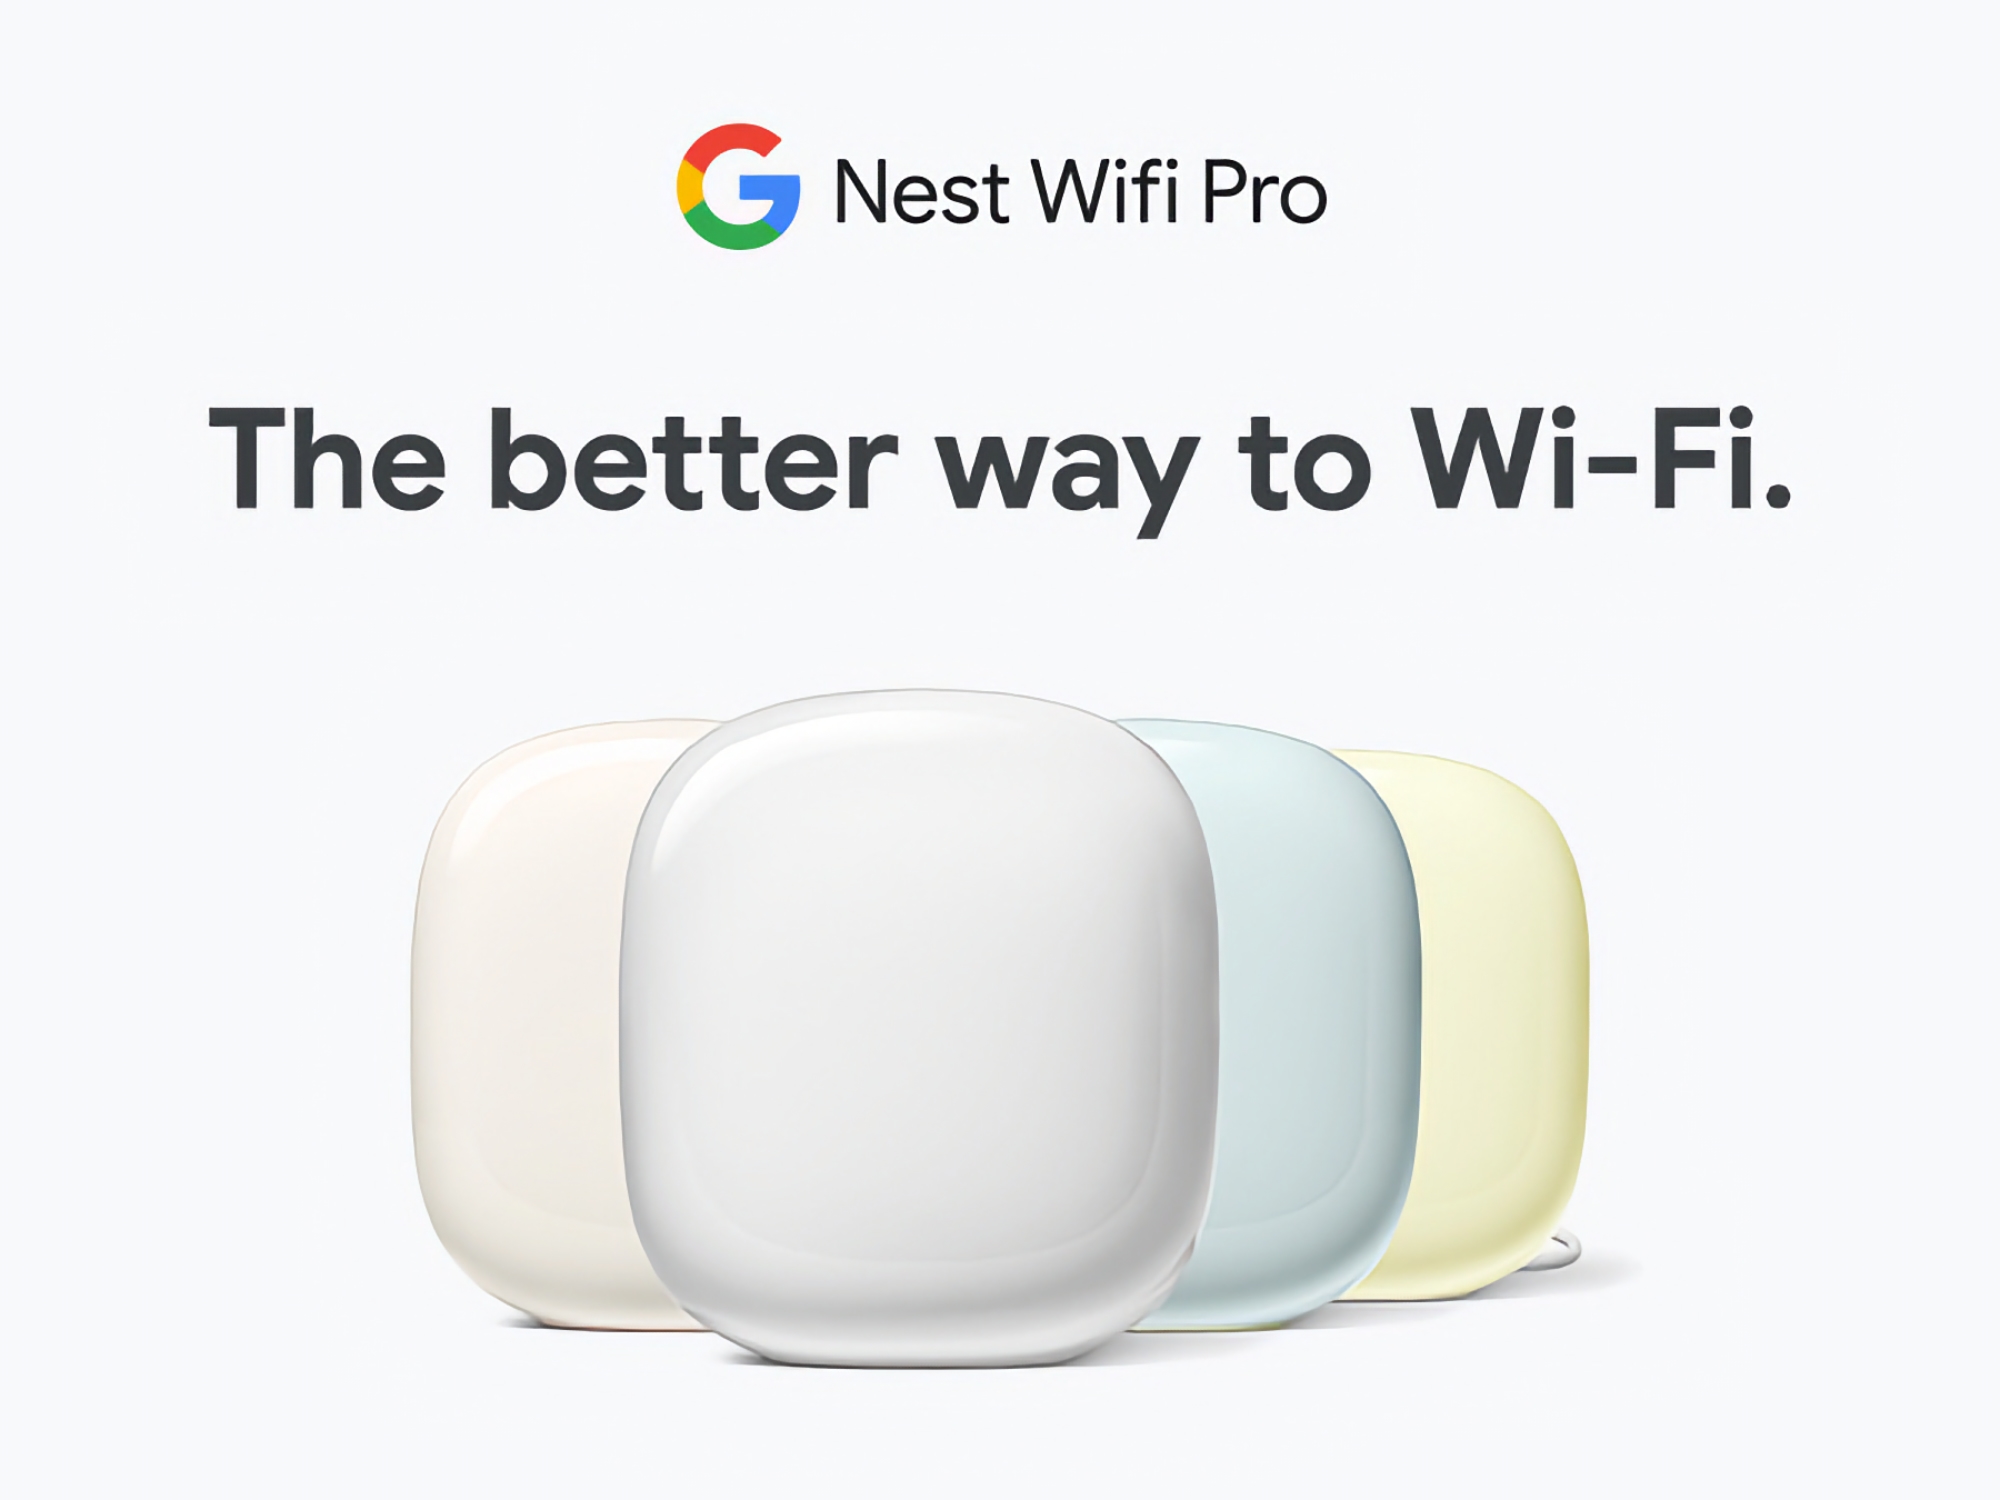 Домашня система роутерів Google Nest WiFi Pro з підтримкою Wi-Fi 6E доступна на Amazon зі знижкою до $80